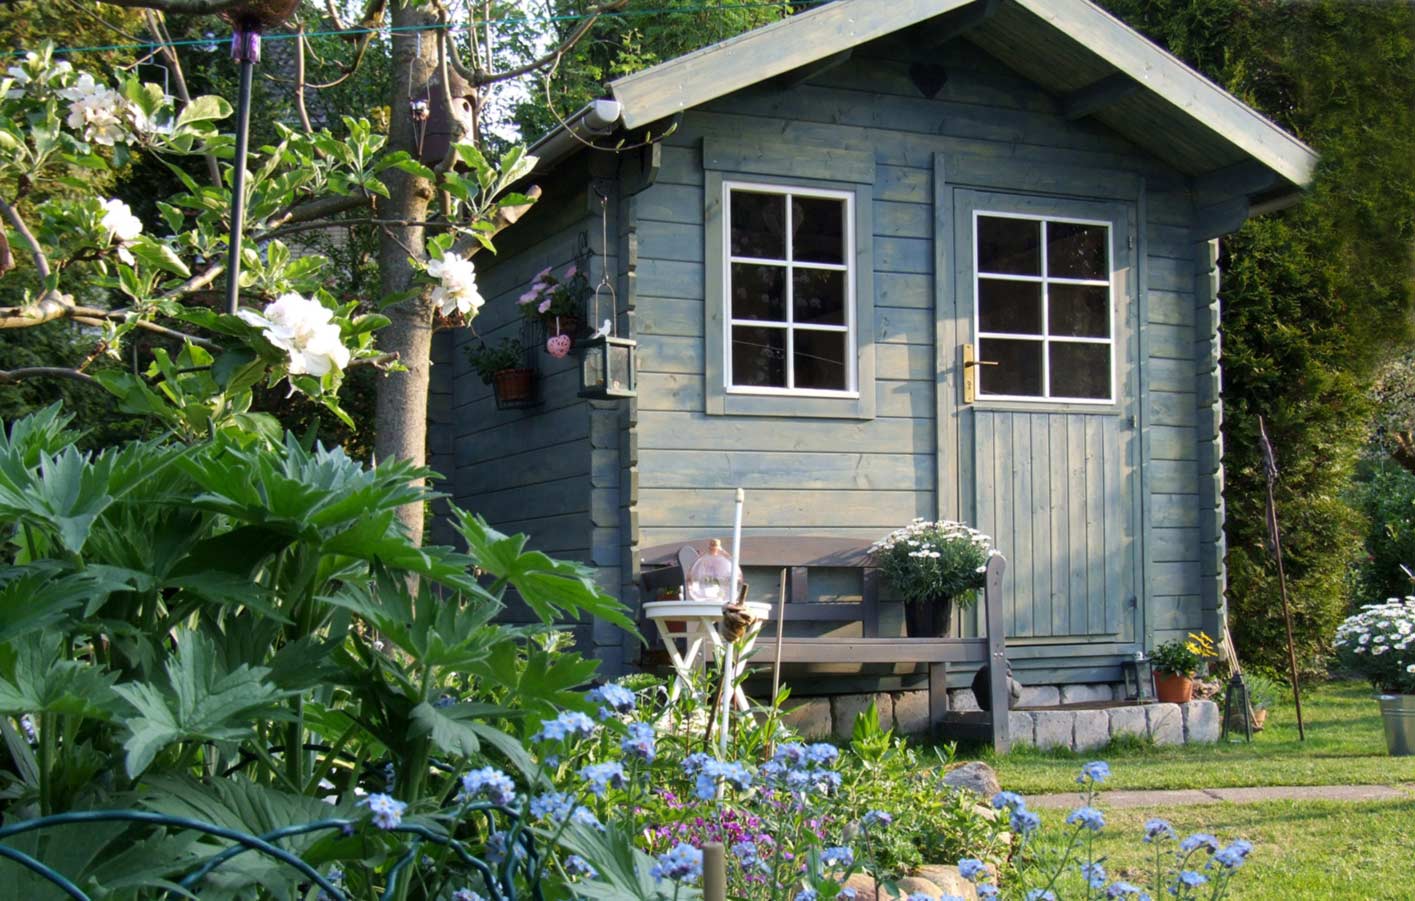 Gartenhaus aus Holz in einem grünen Garten.